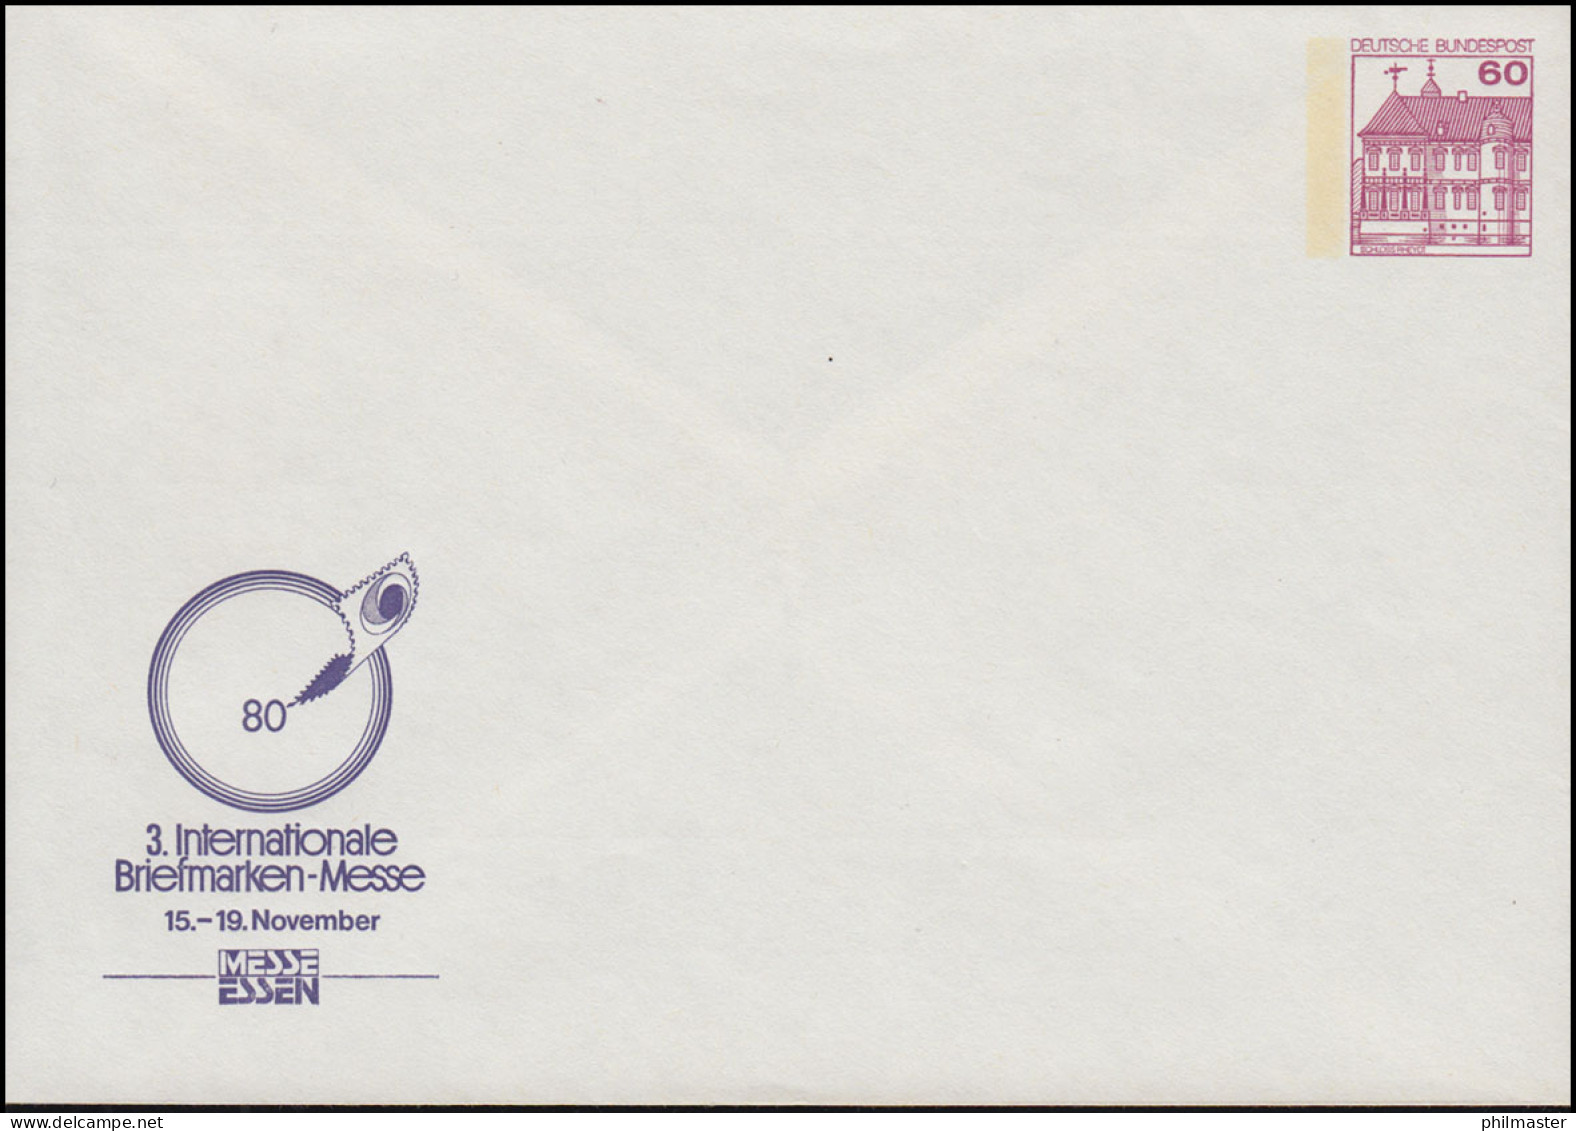 PP 115/65 BuS 60 Pf. 3. Briefmarken-Messe Essen 1980, Postfrisch ** - Enveloppes Privées - Neuves